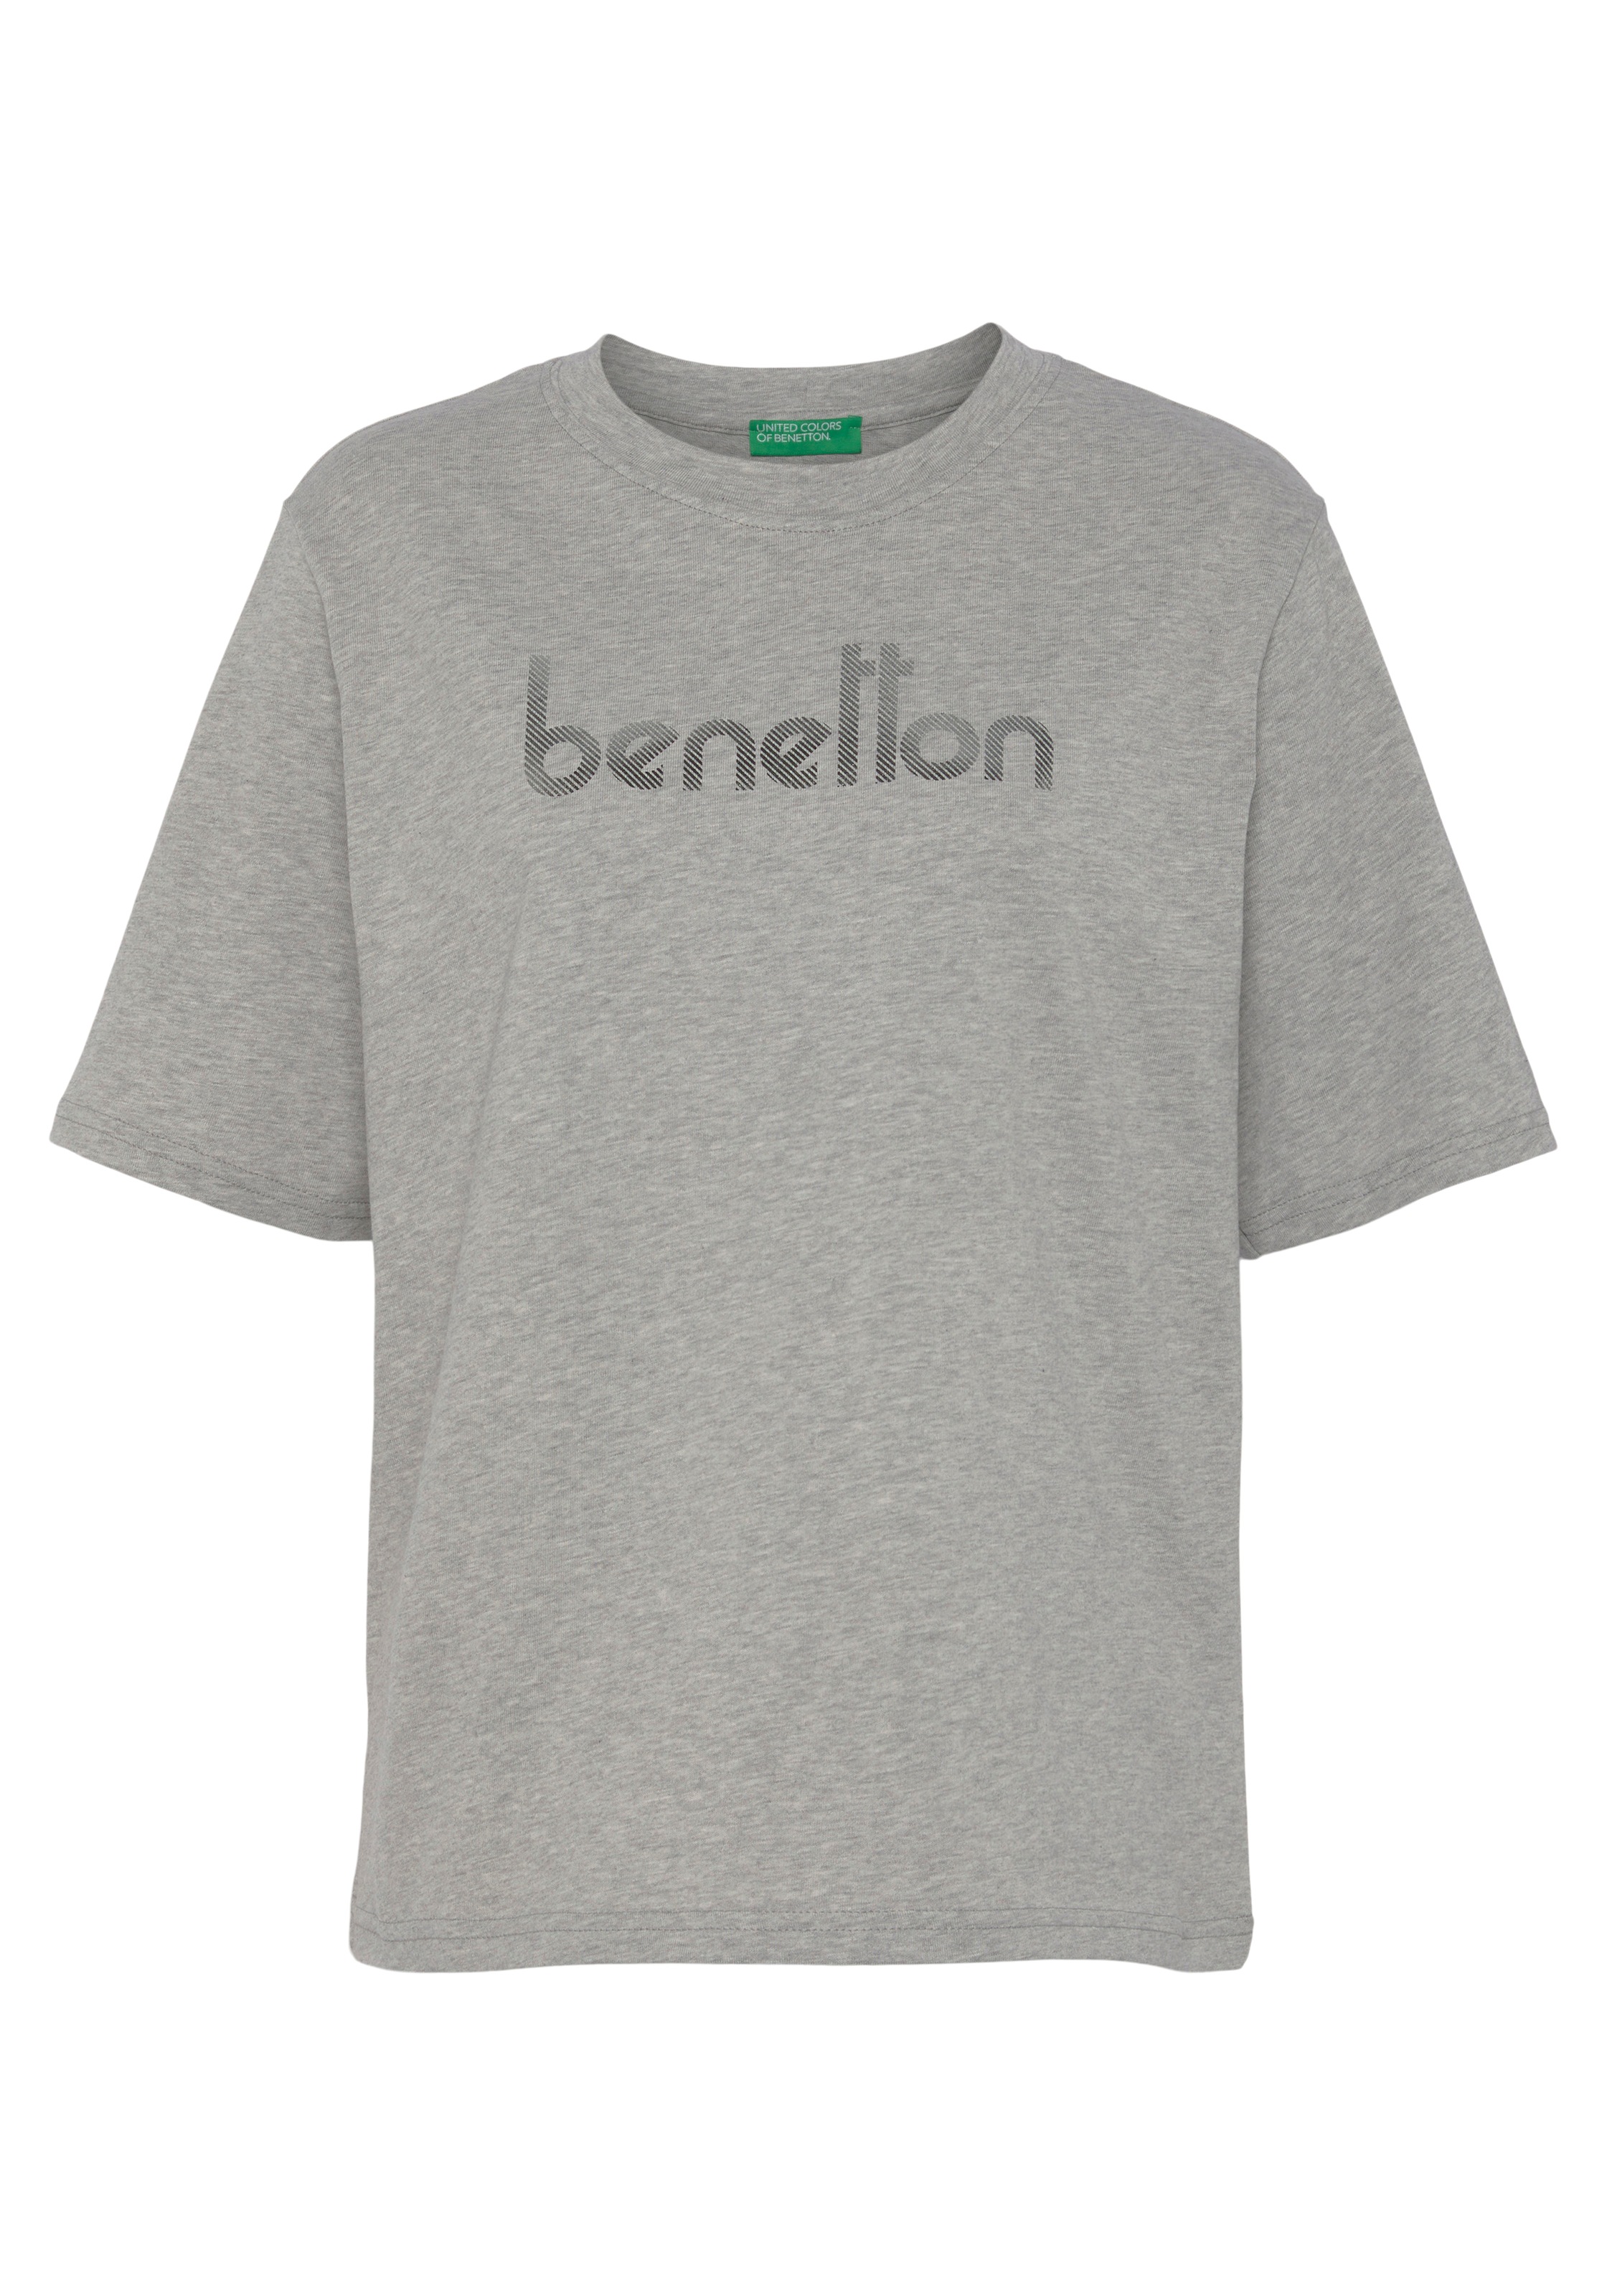 United Colors Logodruck of T-Shirt, Brust shoppen mit Benetton auf der